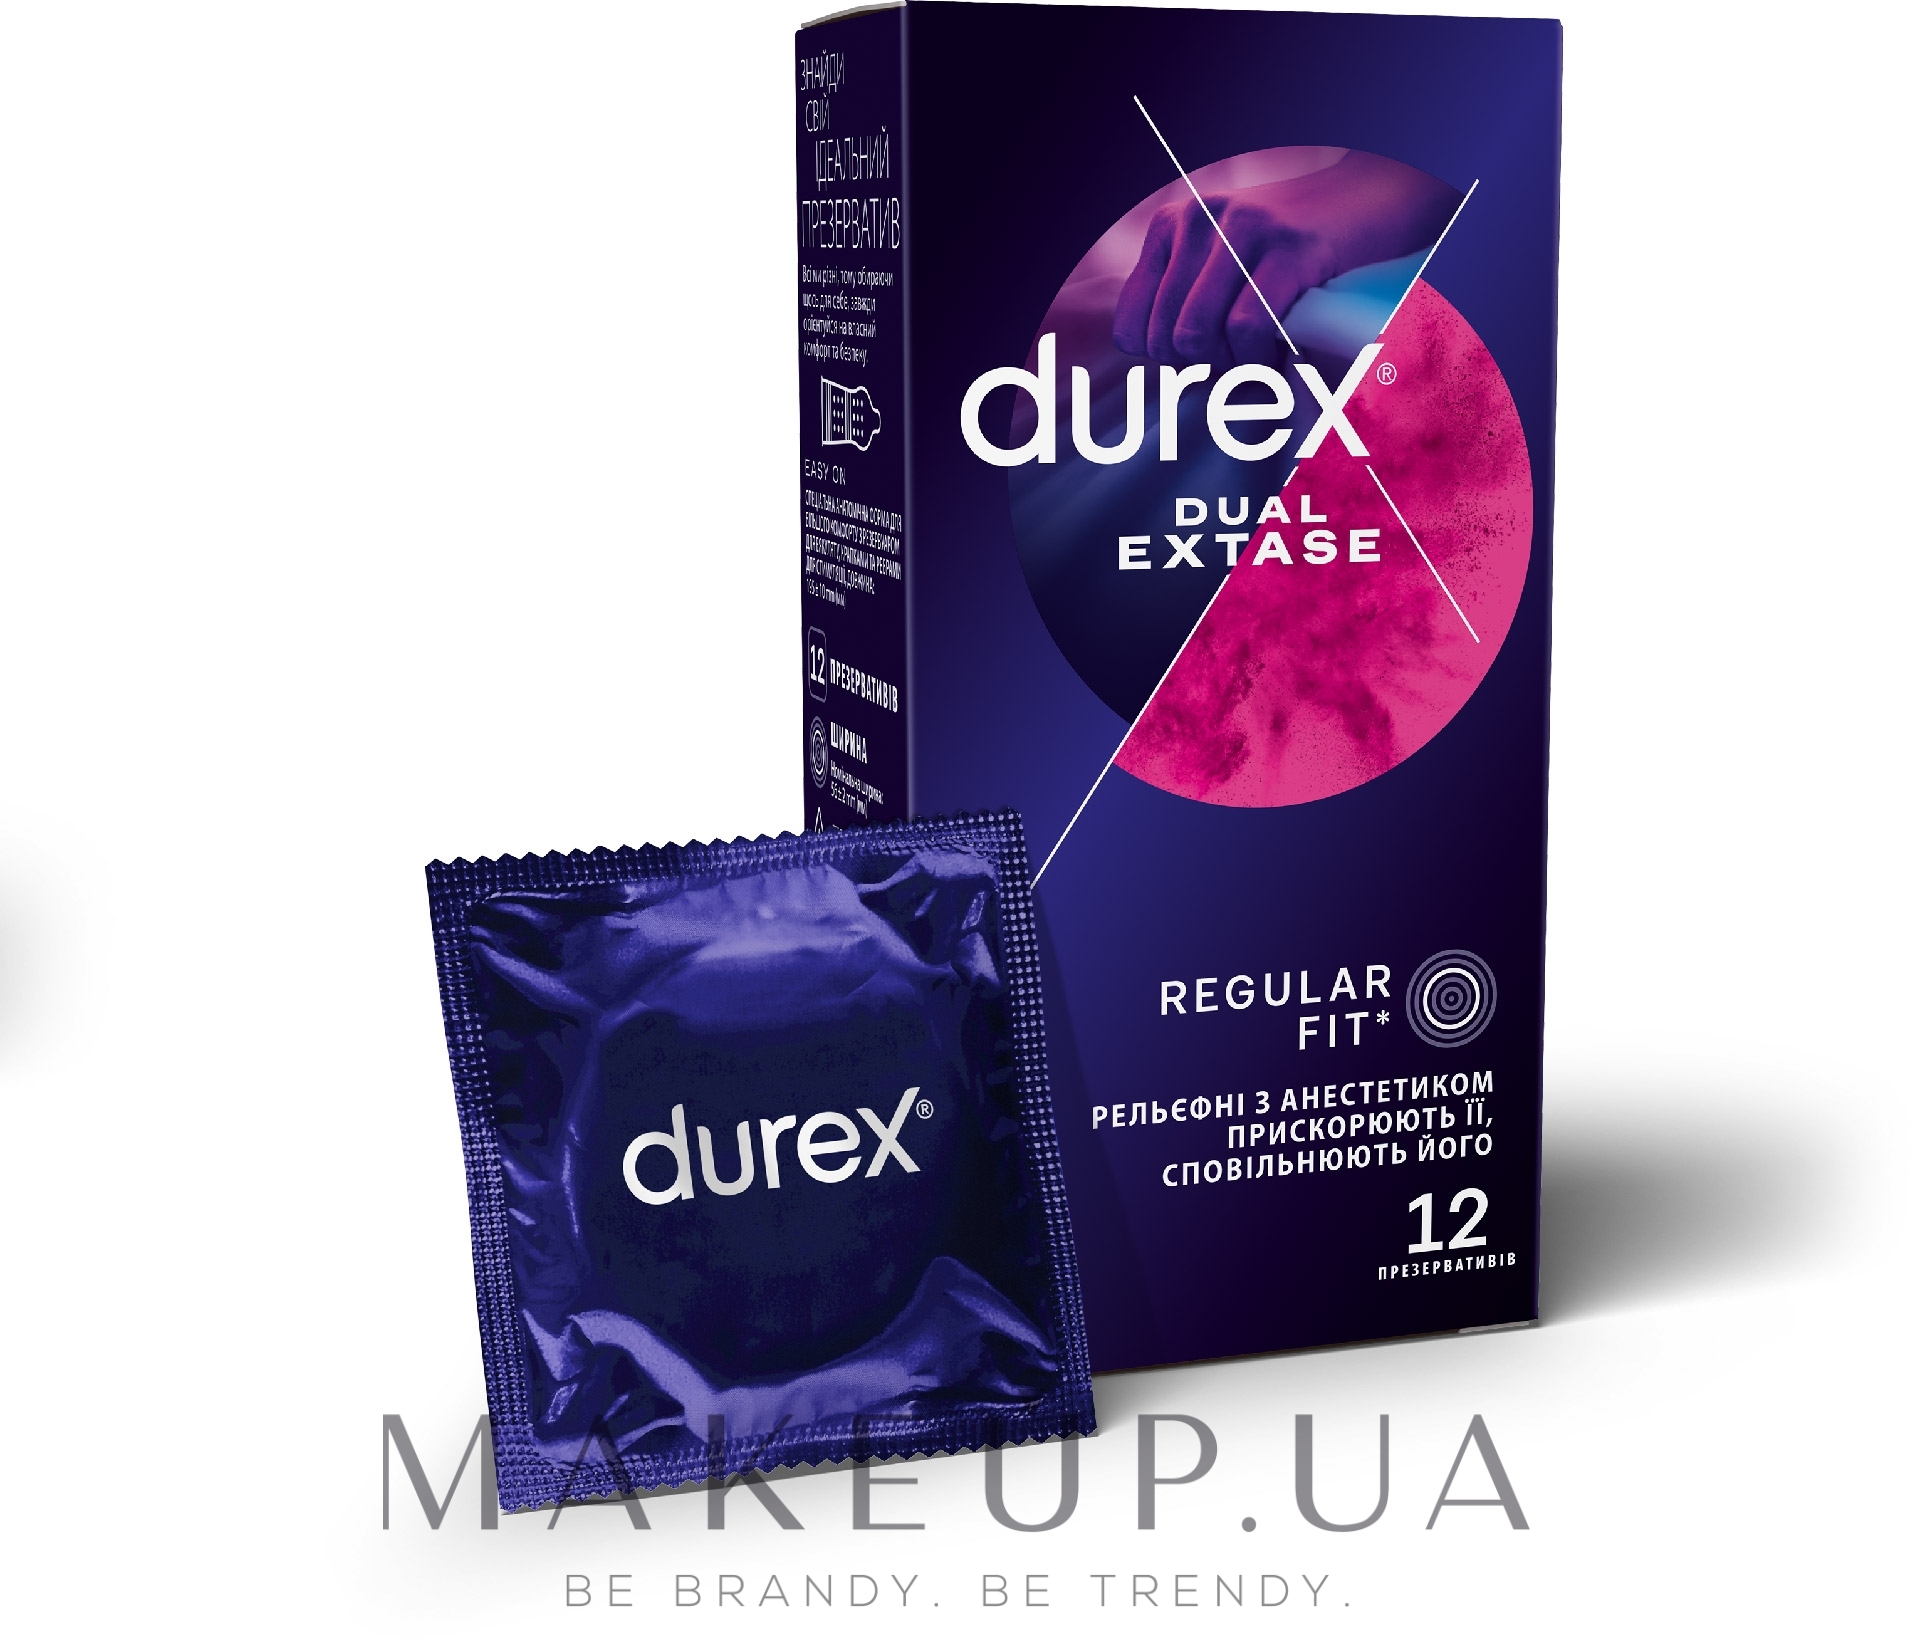 Презервативы латексные с силиконовой смазкой, рельефные с анестетиком, 12  шт - Durex Dual Extase: купить по лучшей цене в Украине | Makeup.ua